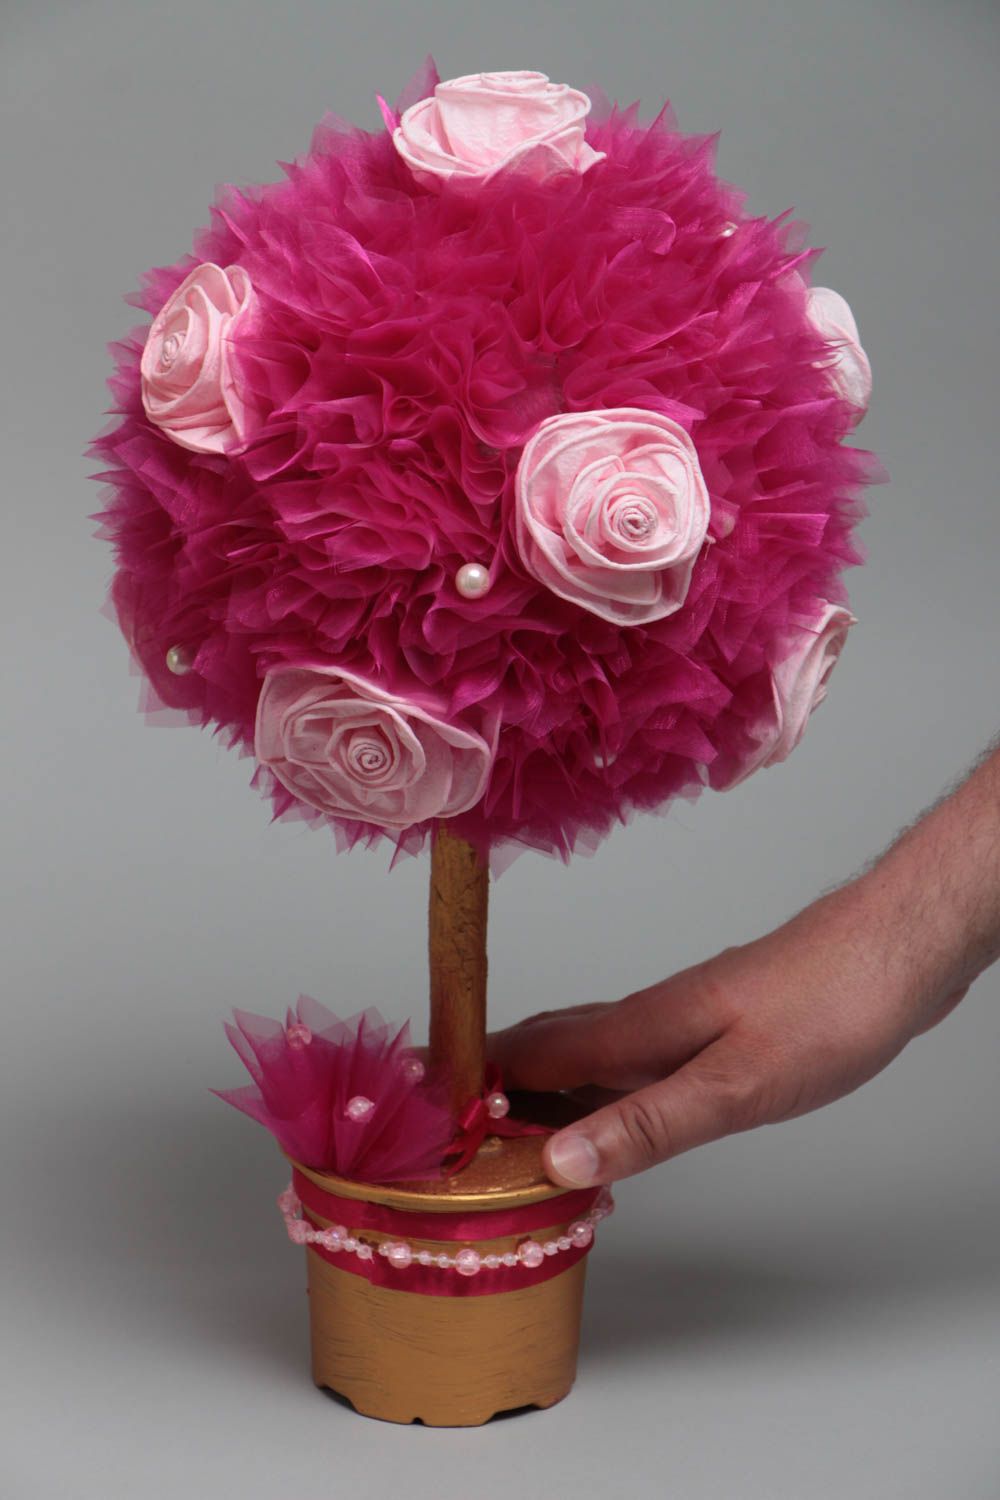 Топиарий из органзы и цветов розовый в горшке небольшого размера ручная работа фото 5